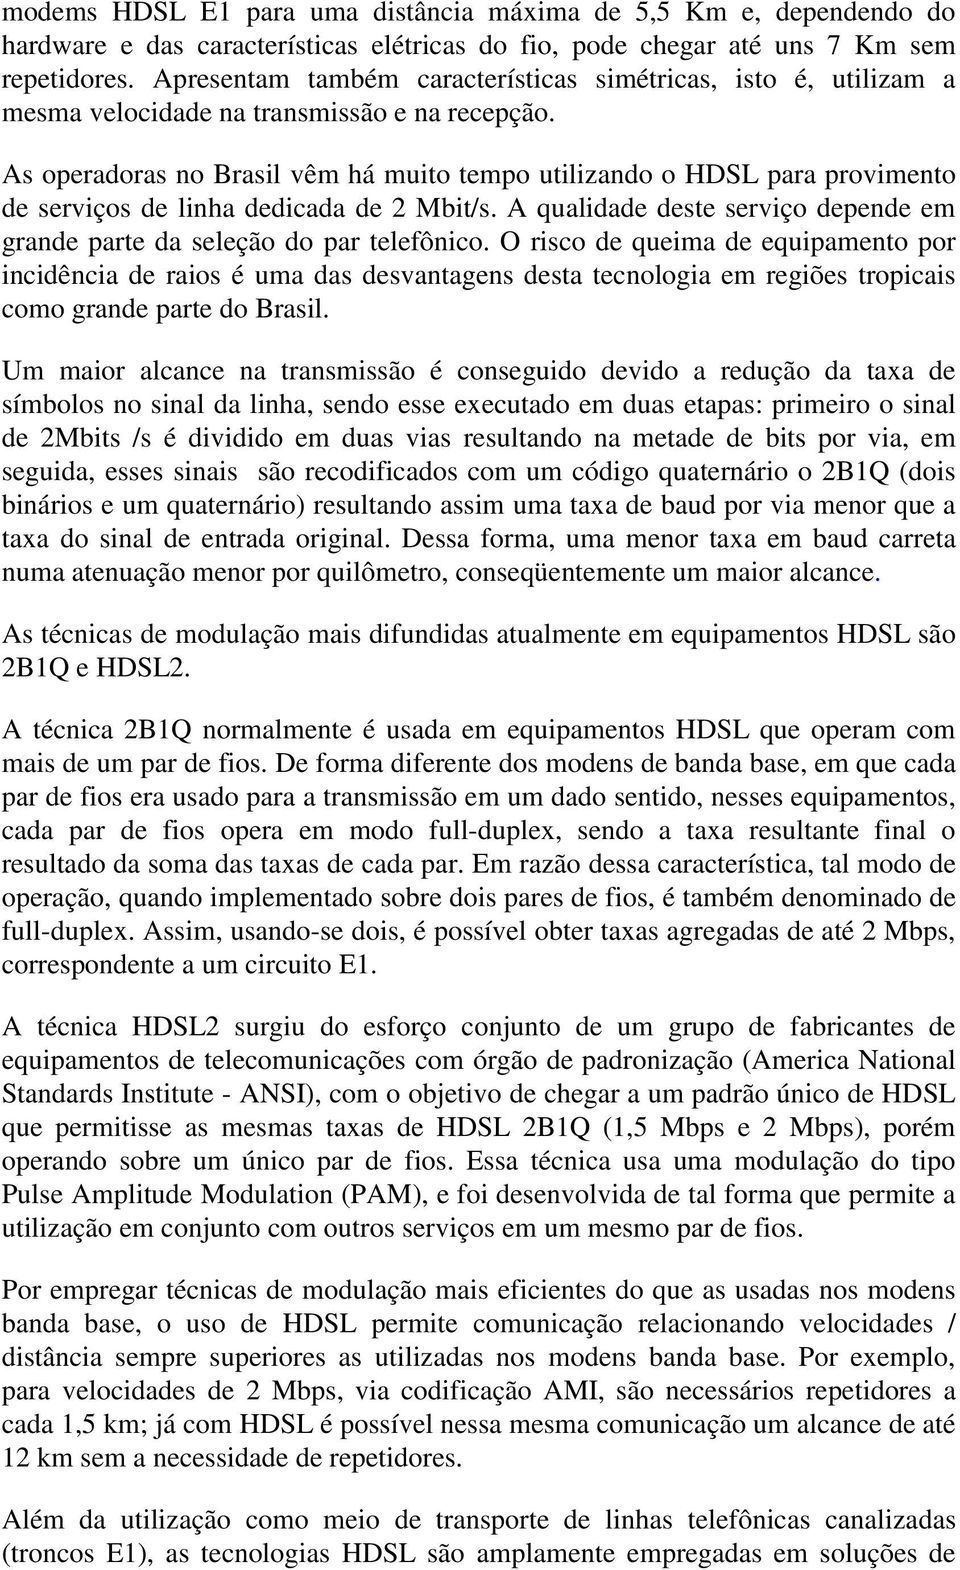 As operadoras no Brasil vêm há muito tempo utilizando o HDSL para provimento de serviços de linha dedicada de 2 Mbit/s. A qualidade deste serviço depende em grande parte da seleção do par telefônico.